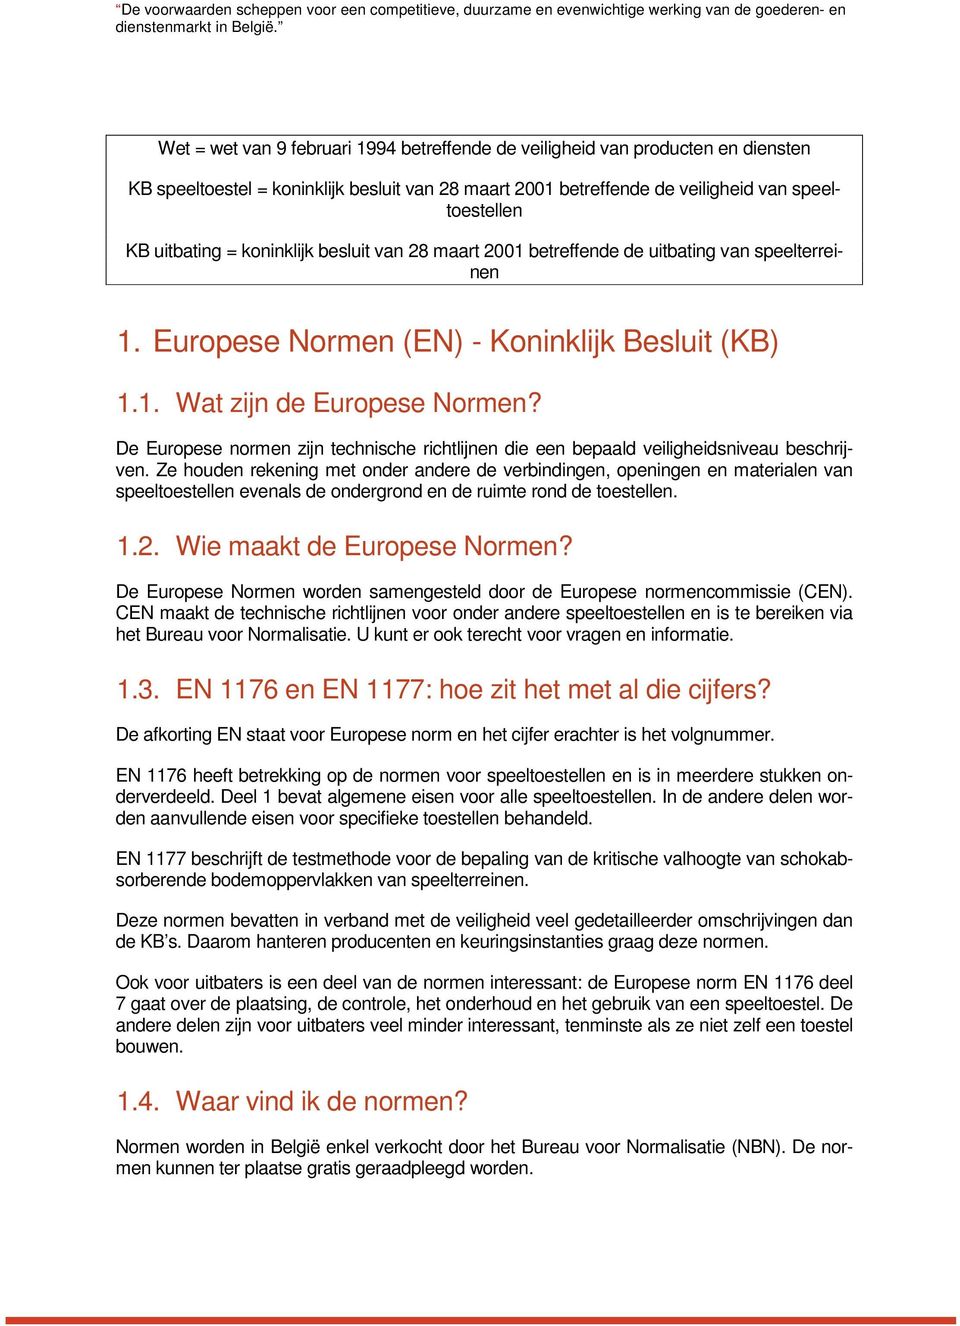 koninklijk besluit van 28 maart 2001 betreffende de uitbating van speelterreinen 1. Europese Normen (EN) - Koninklijk Besluit (KB) 1.1. Wat zijn de Europese Normen?